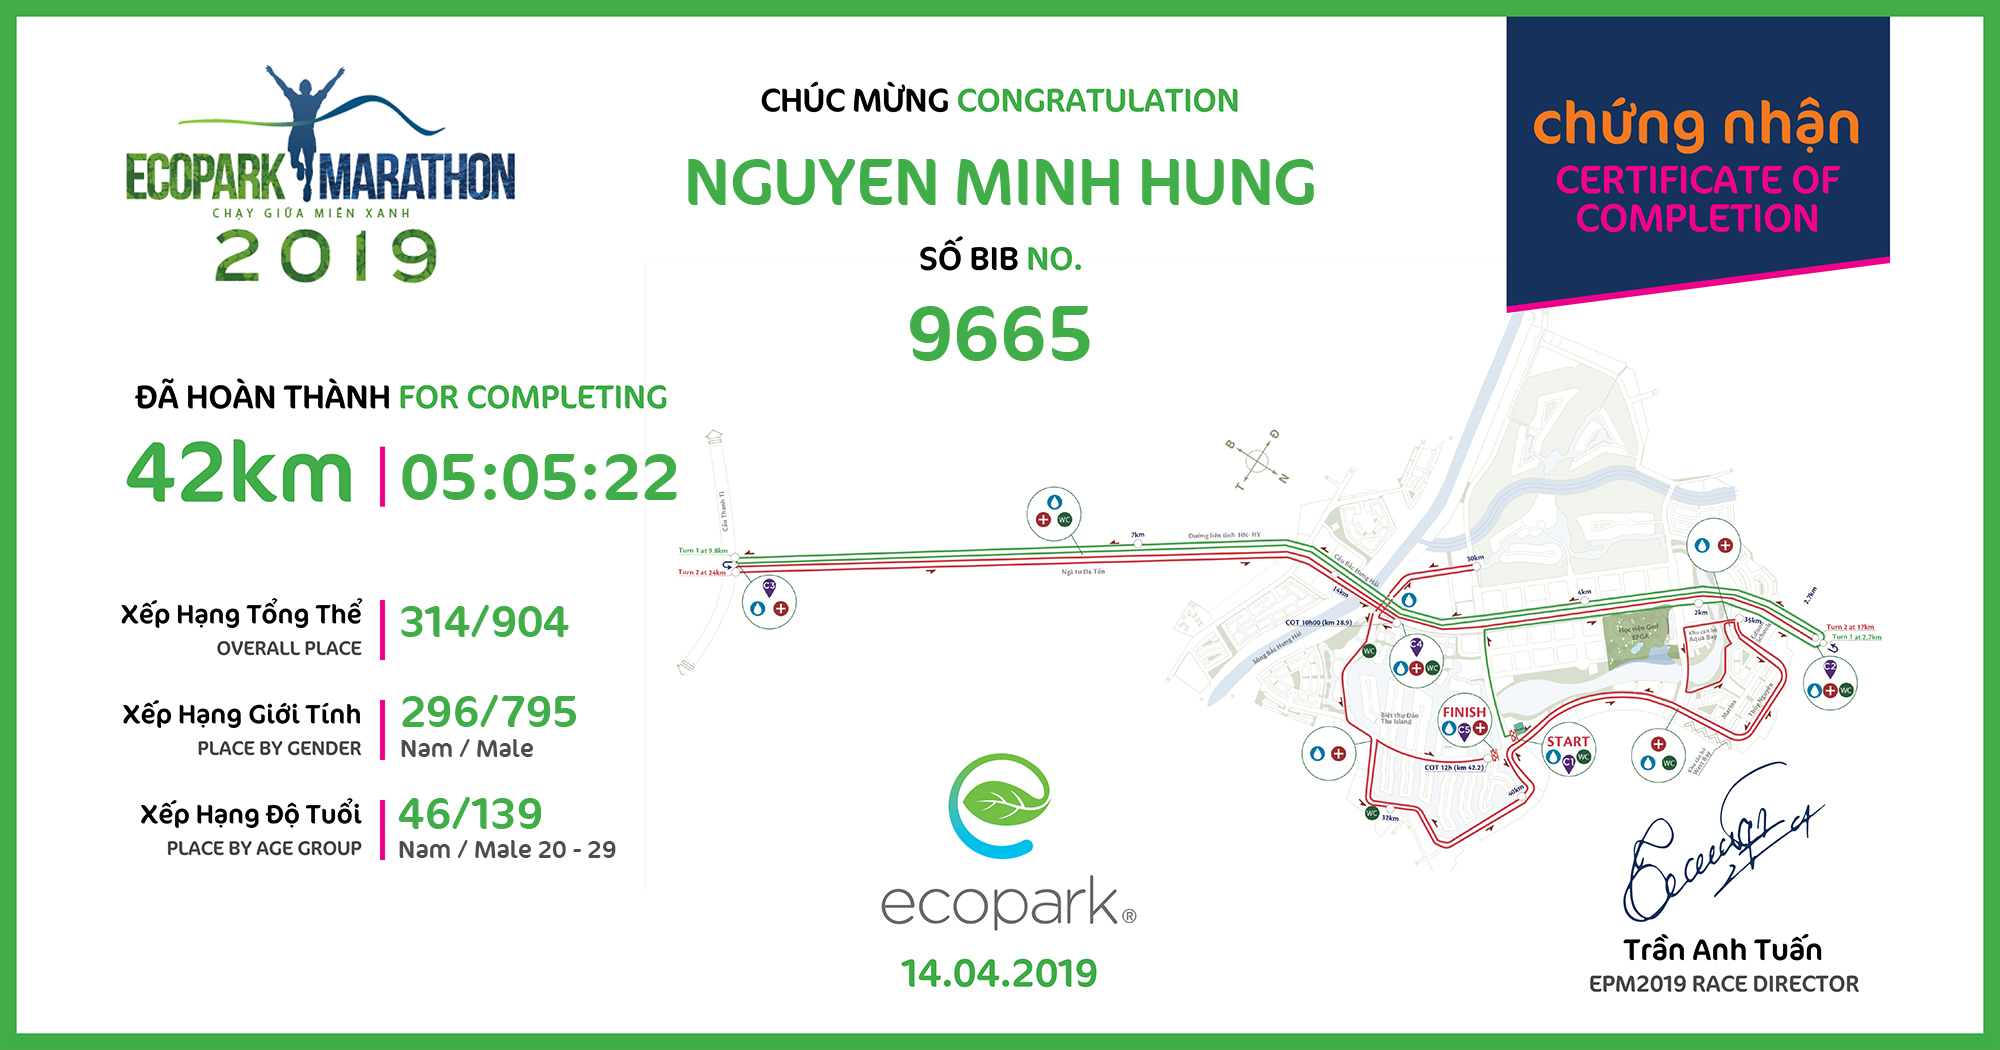 9665 - Nguyen Minh Hung